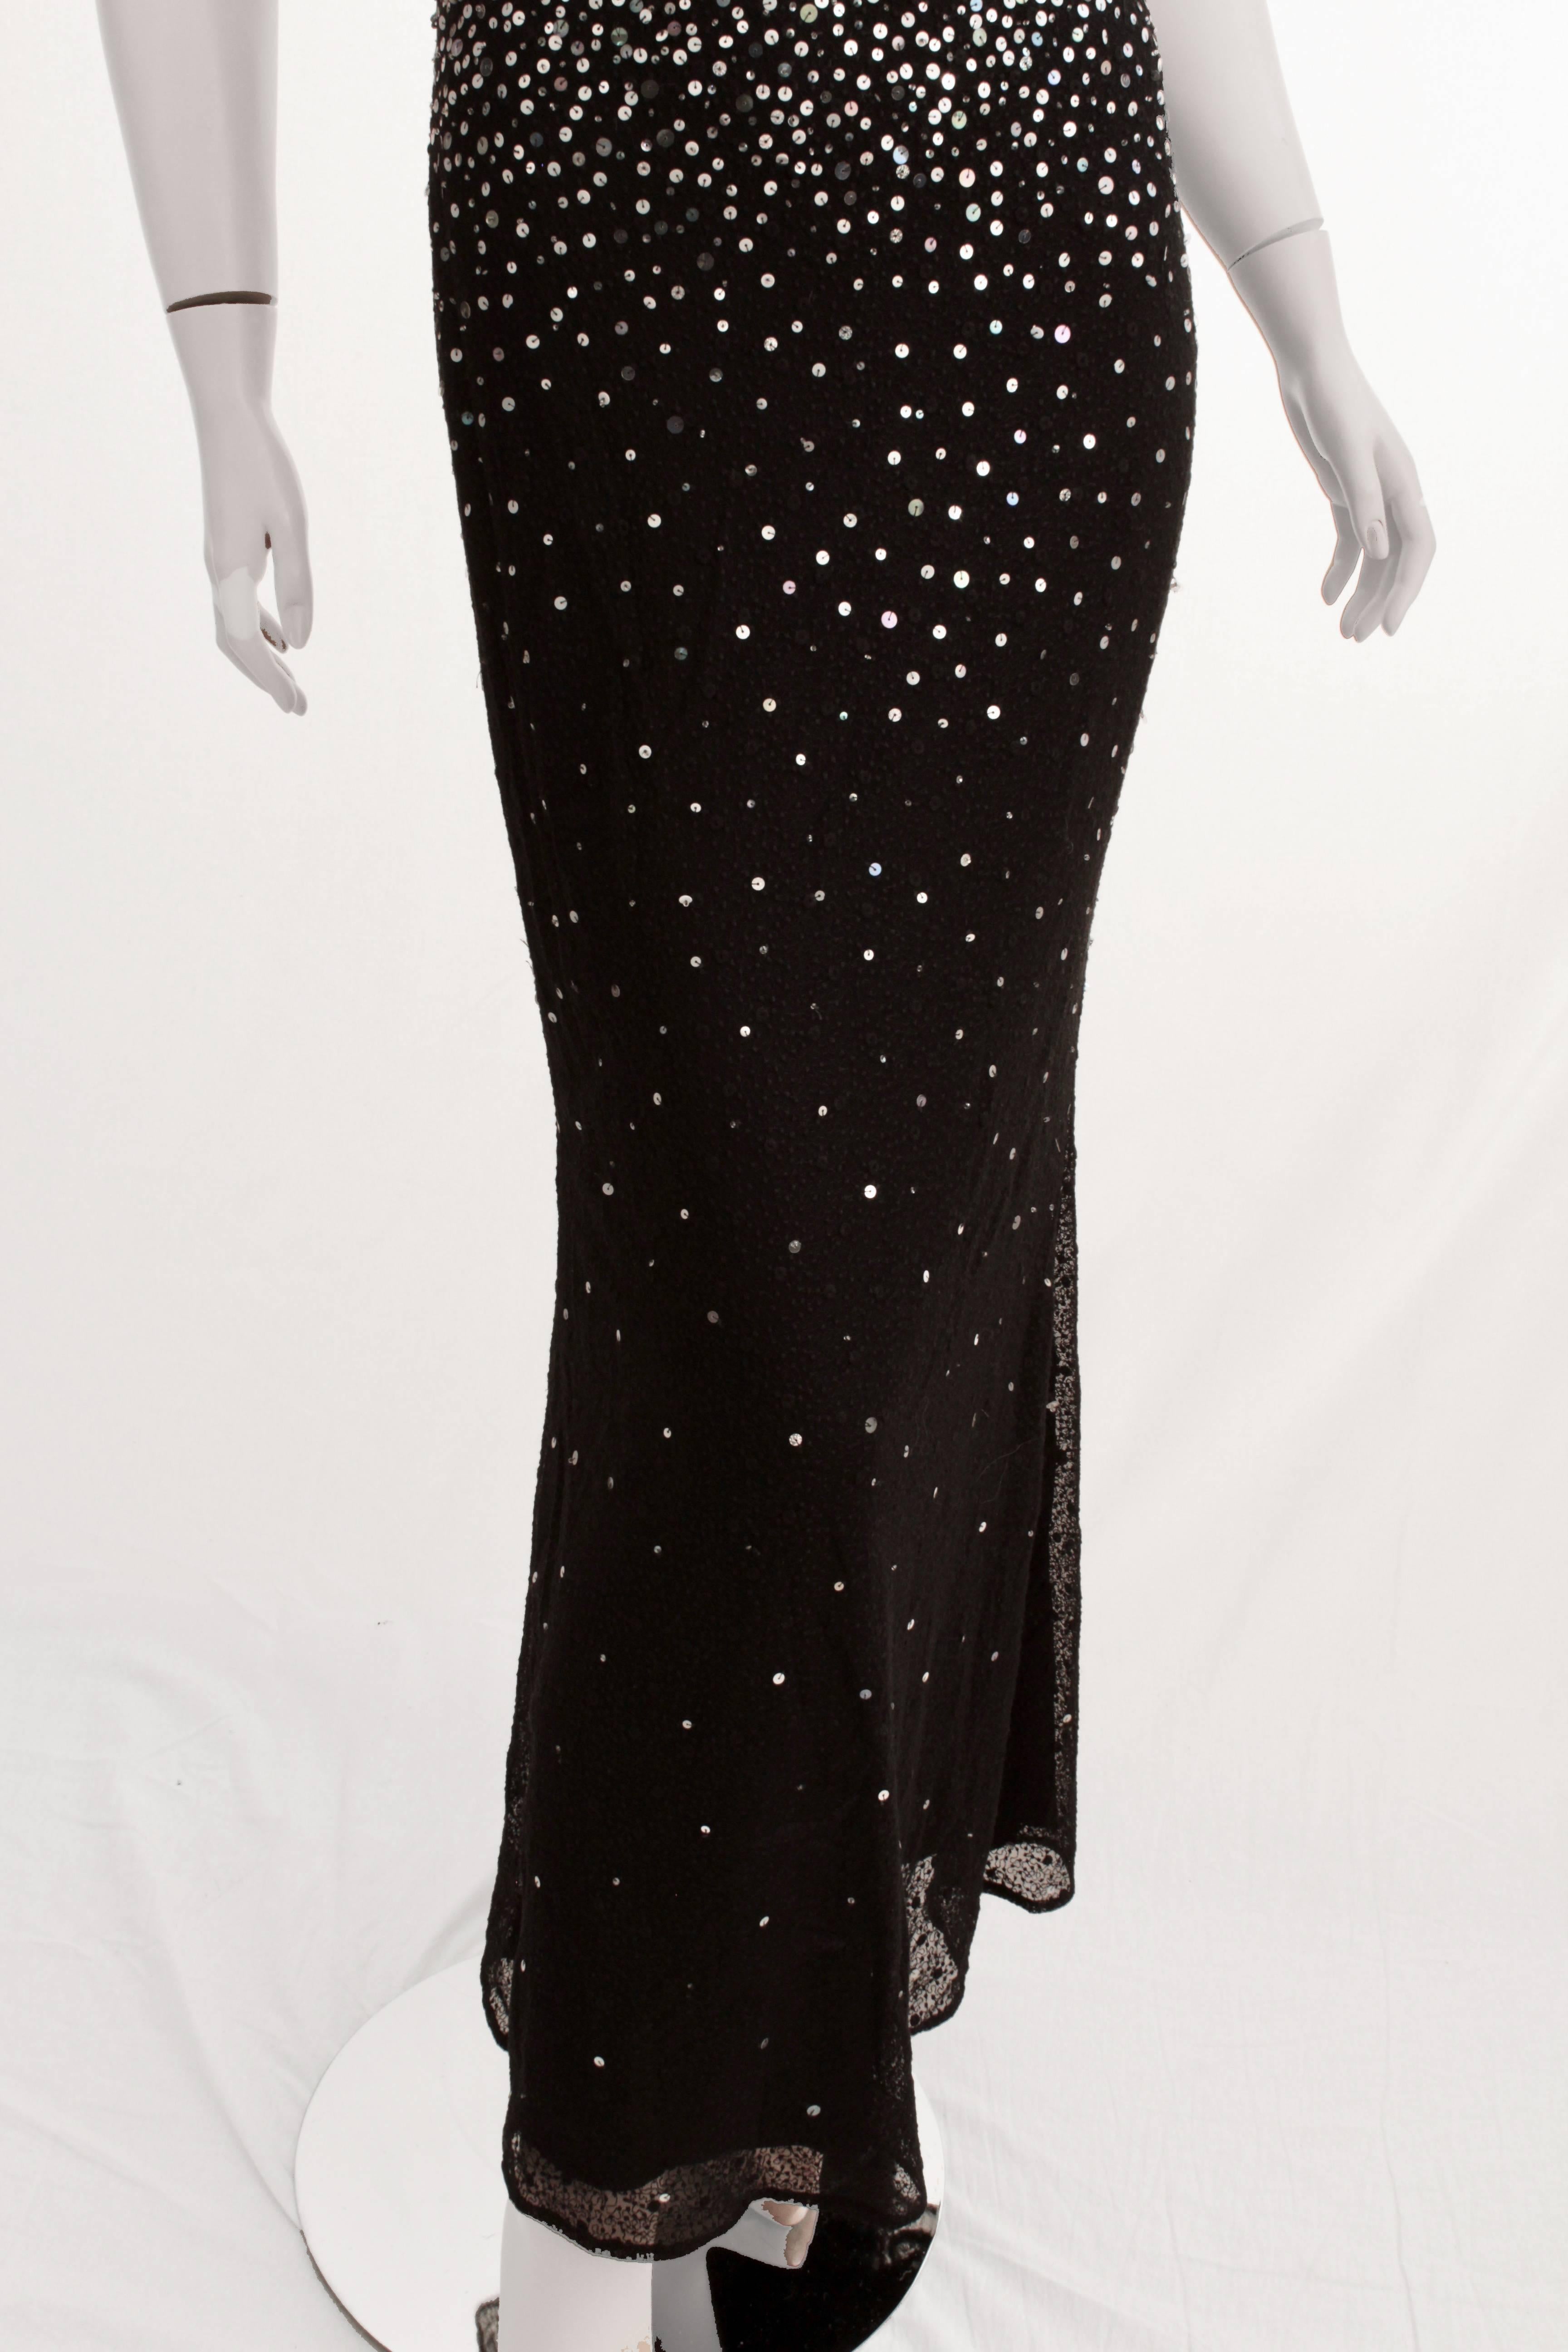 Naeem Khan Evening Gown Silk Sequins Full Length Formal Dress US 6 2